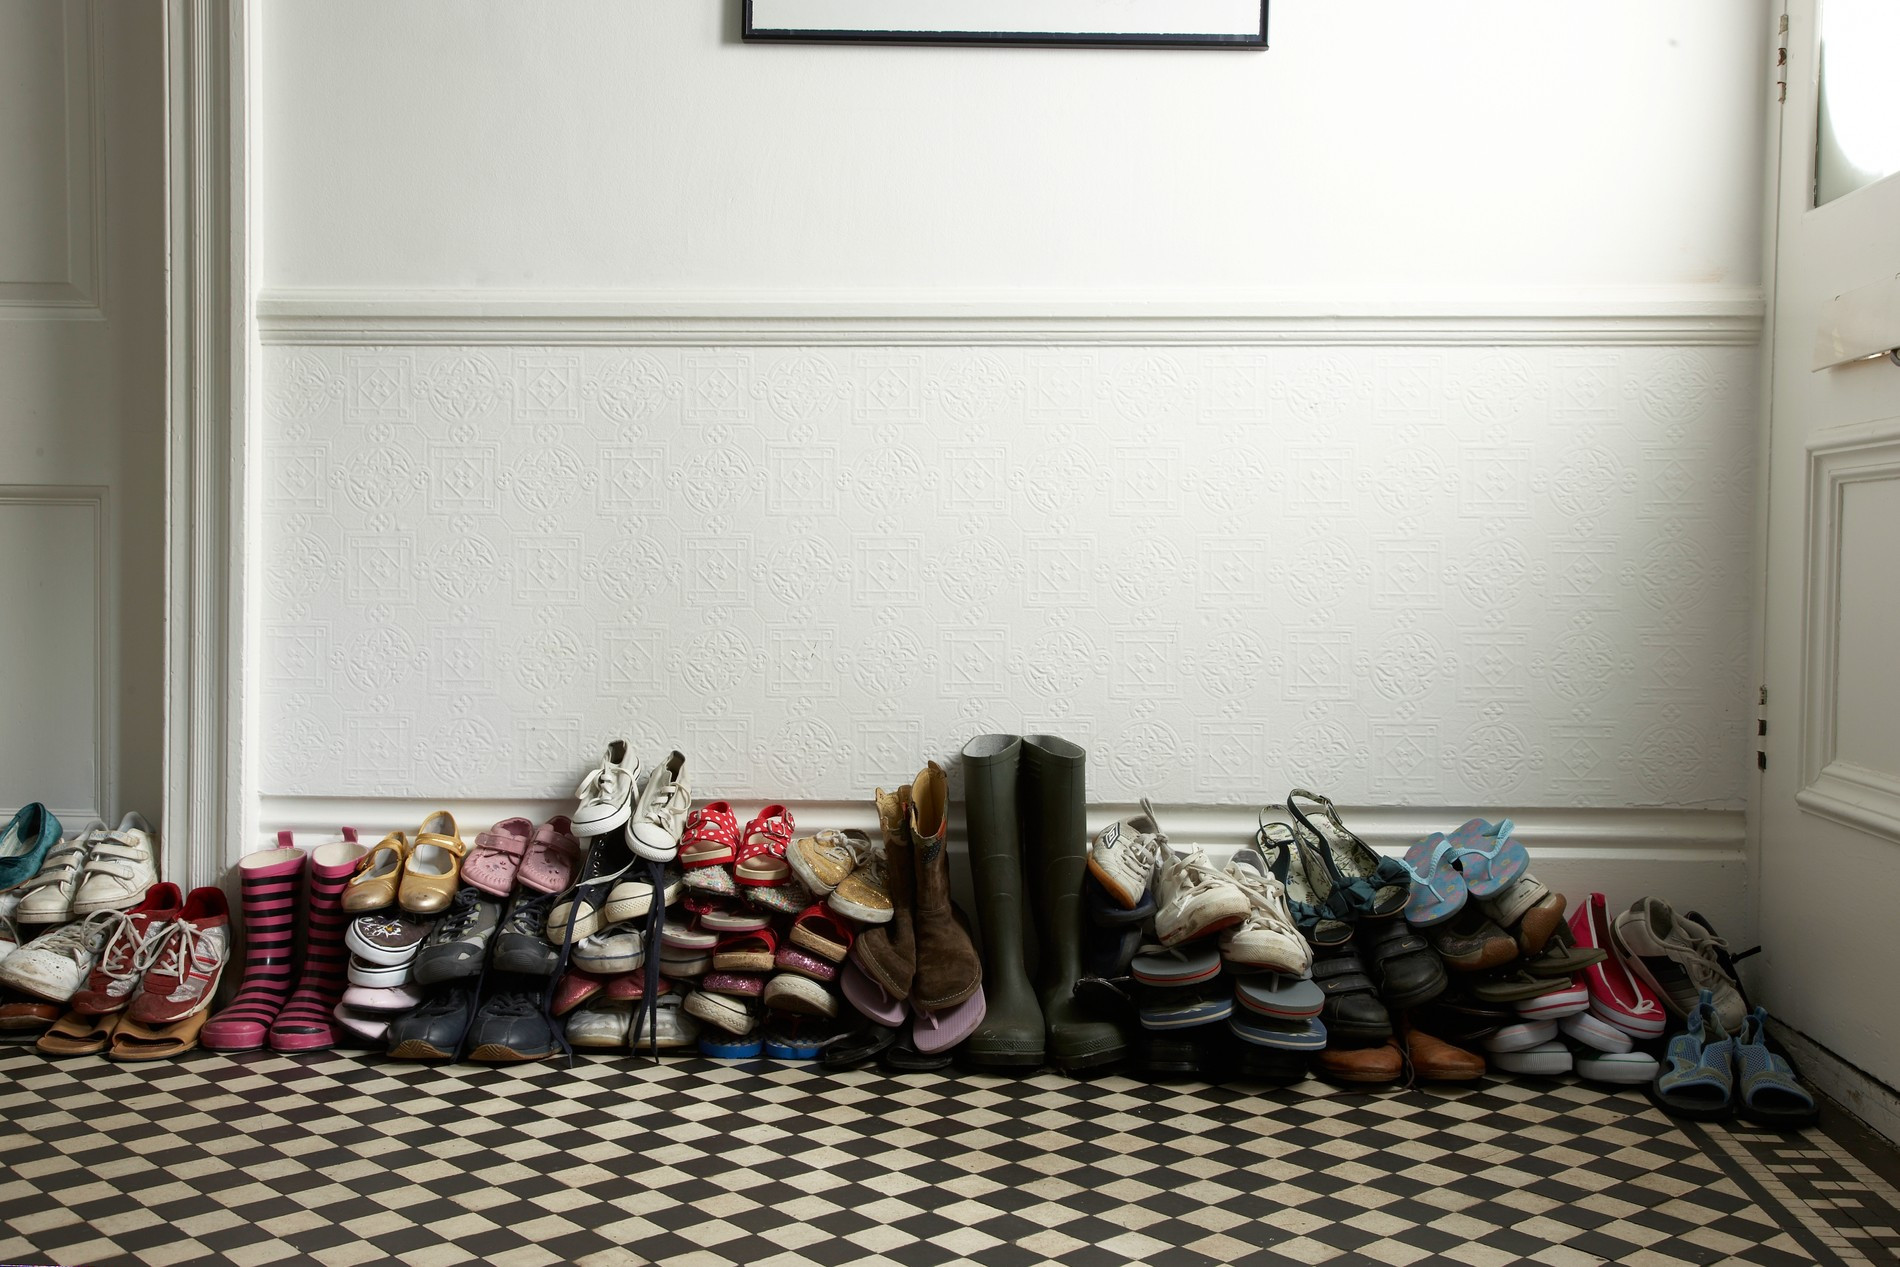 Обувь в коридоре